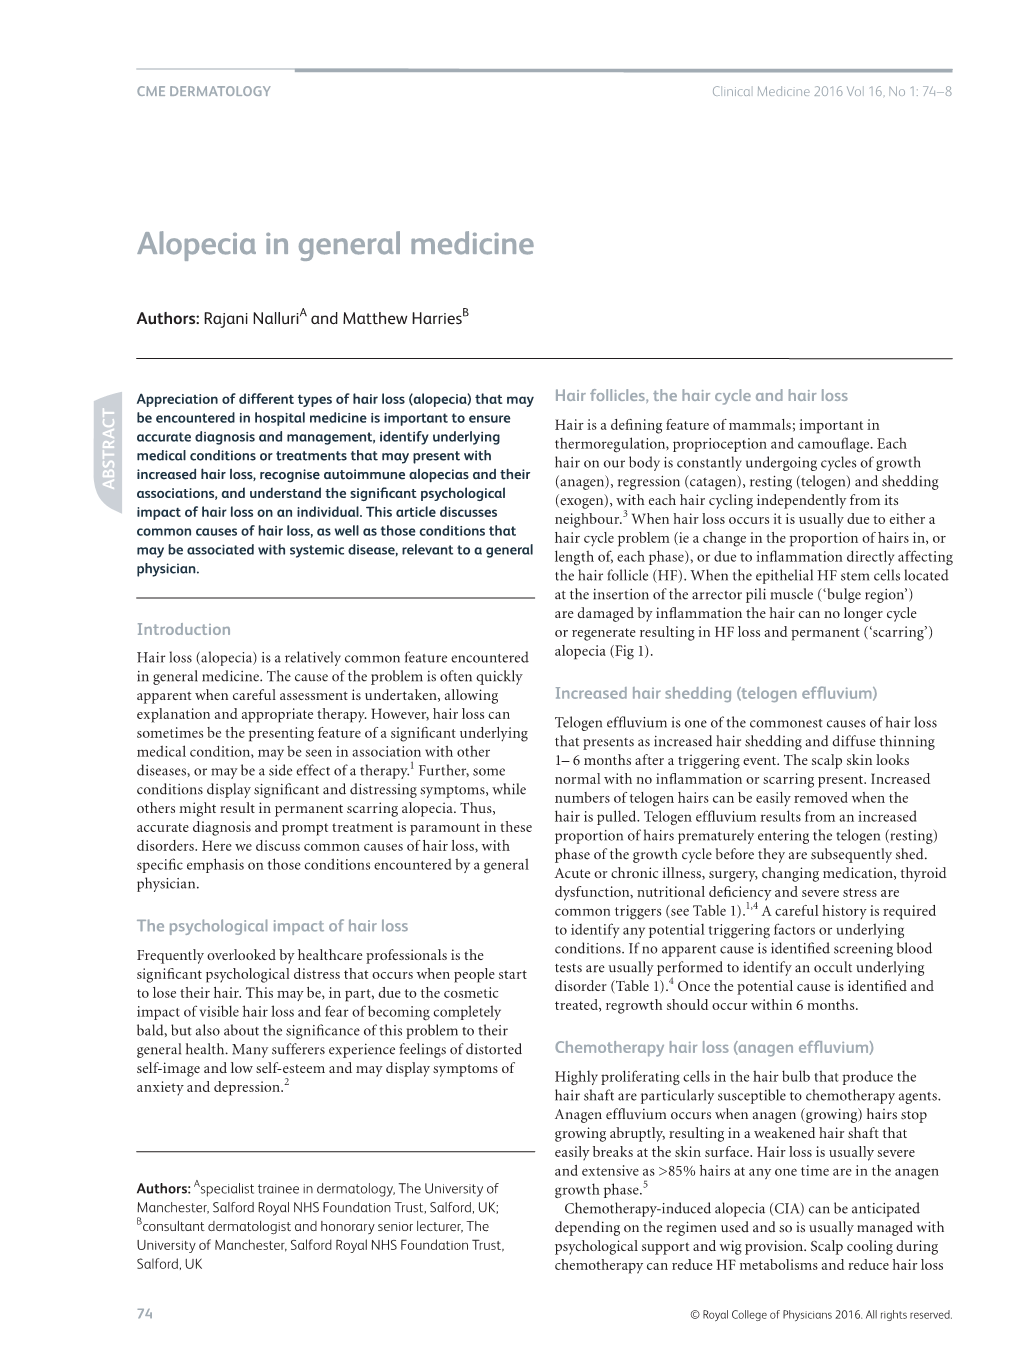 Alopecia in General Medicine